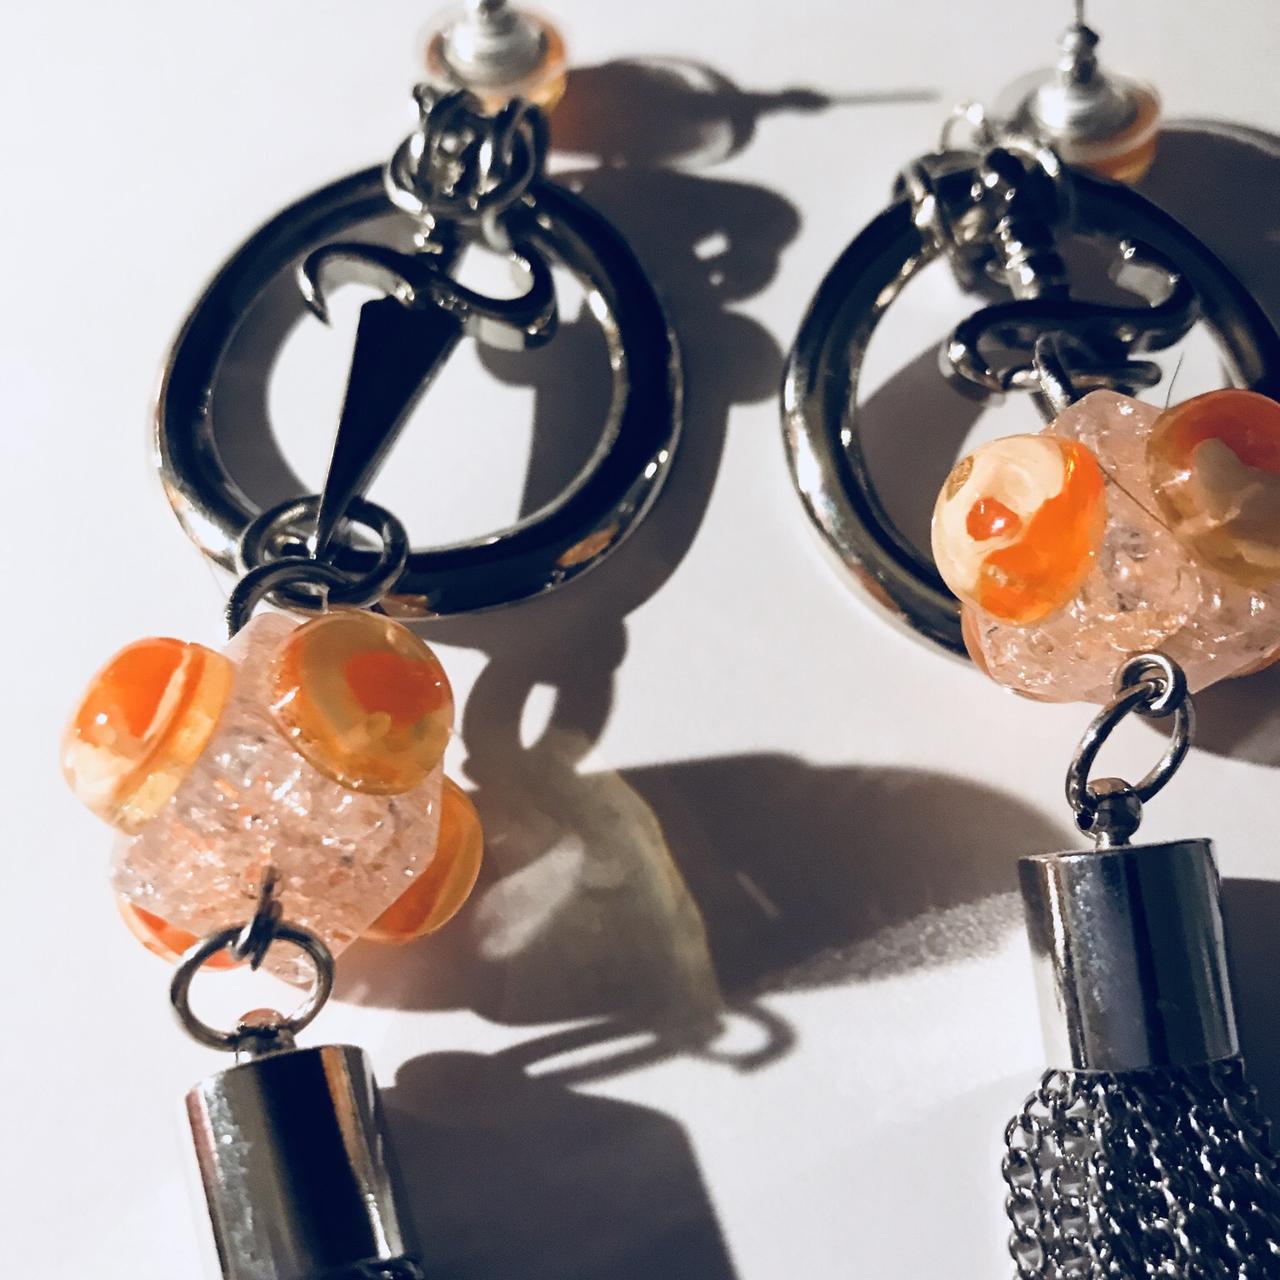 Product Image 2 - Earrings. 3.8 inch long.

#metal
#earrings
#largeearrings
#cyberpunk